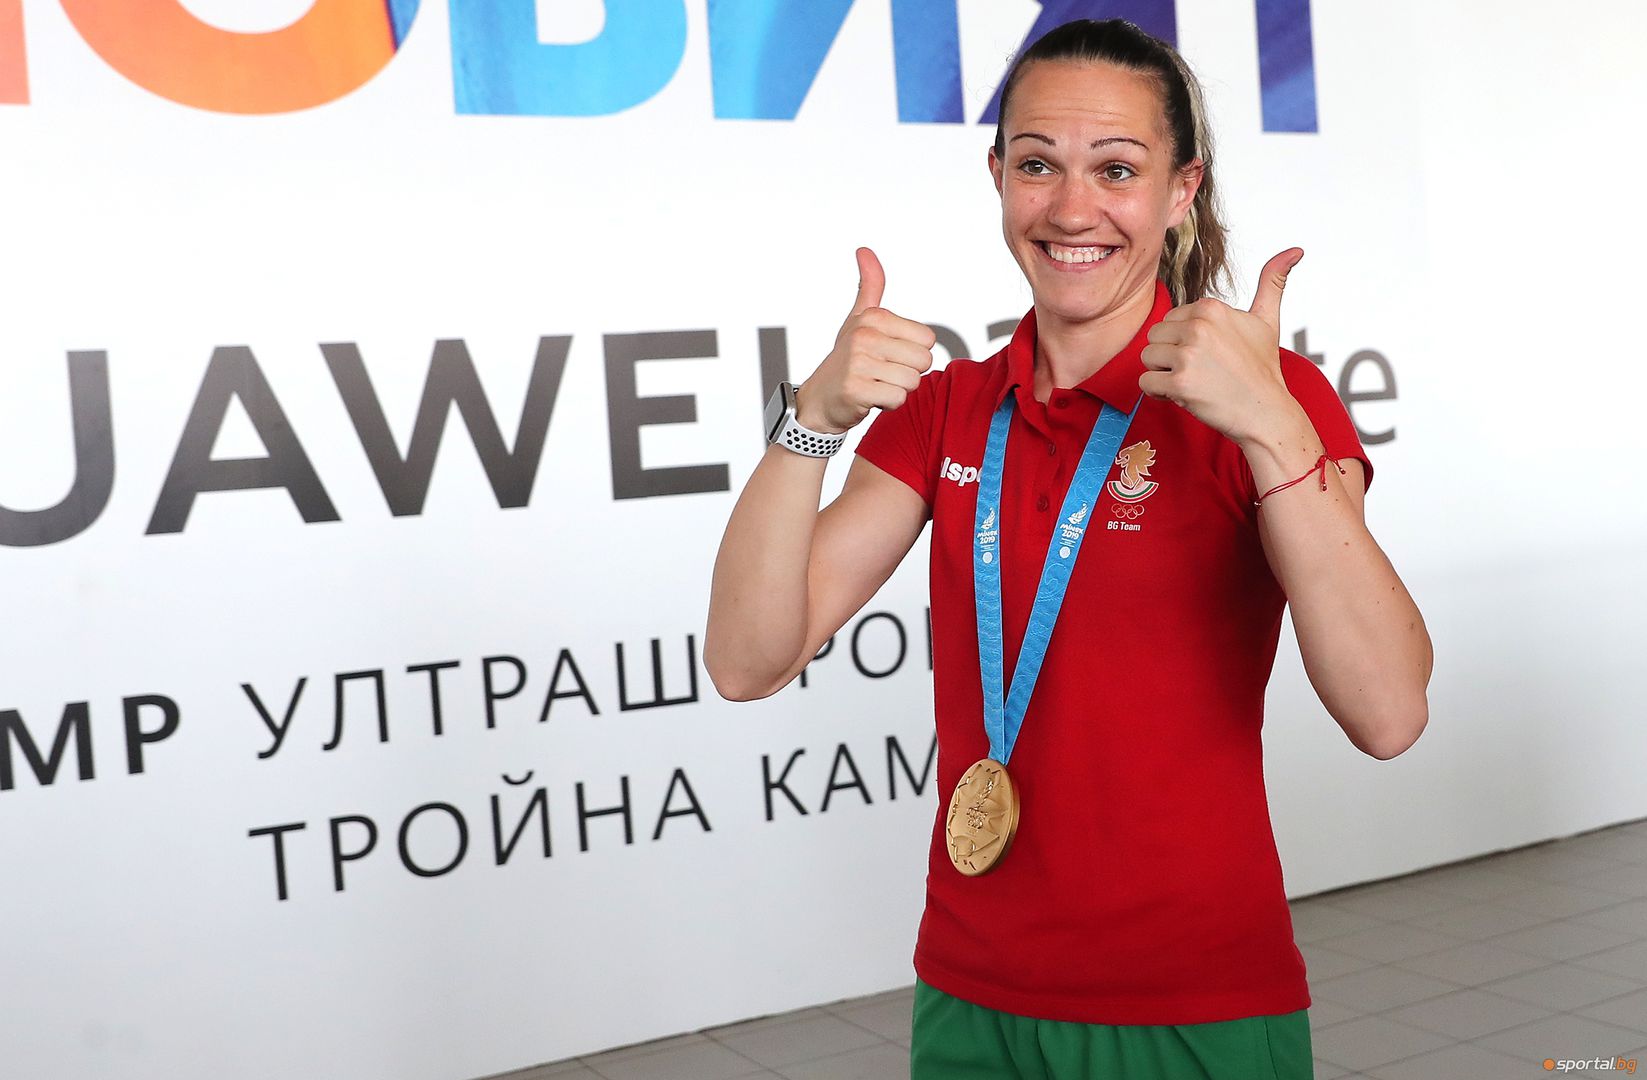 Станимира Петрова, Даниел Асенов и Габриела Димитрова се прибраха с медали